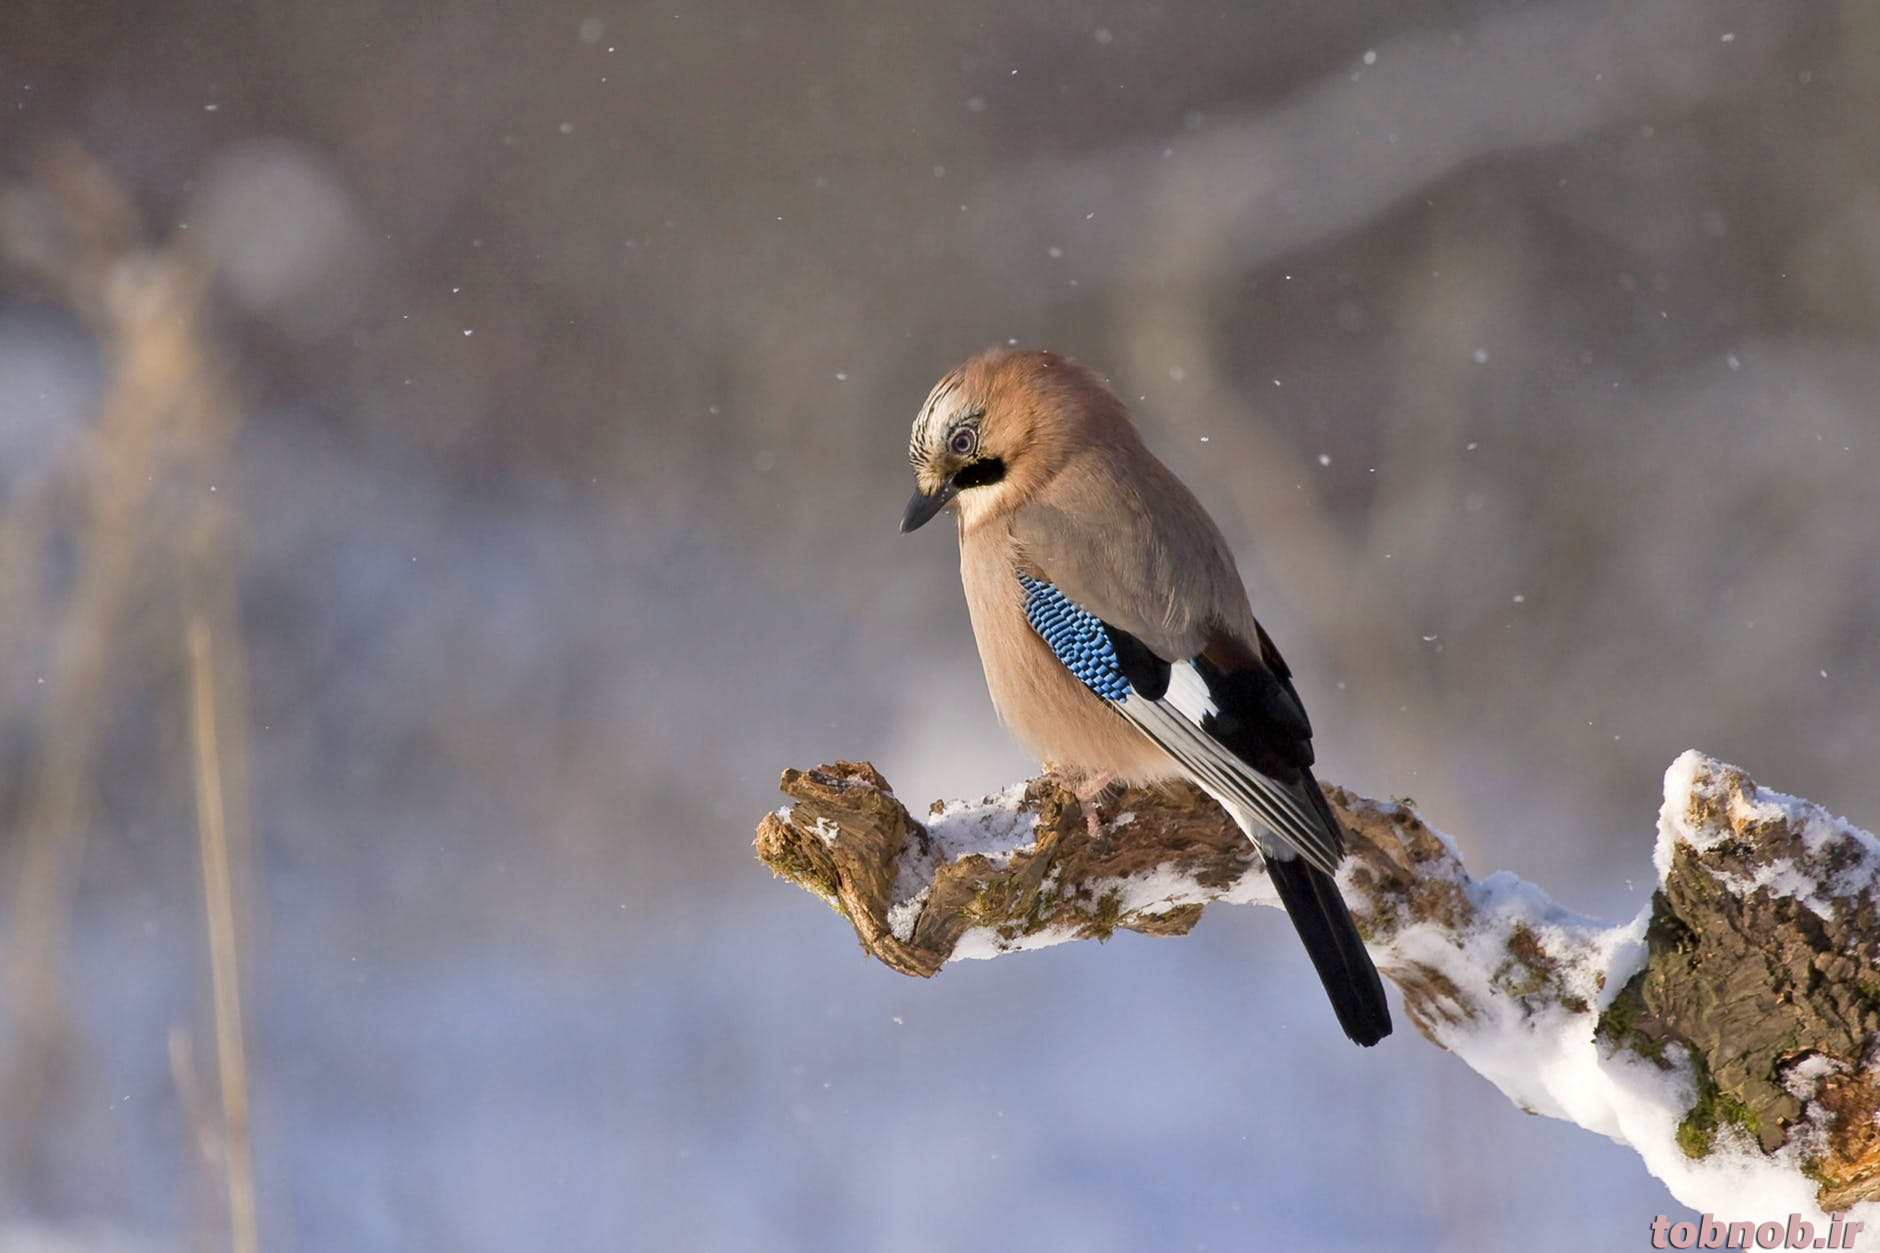 iunc_jay-bird-konar-winter-45212.png